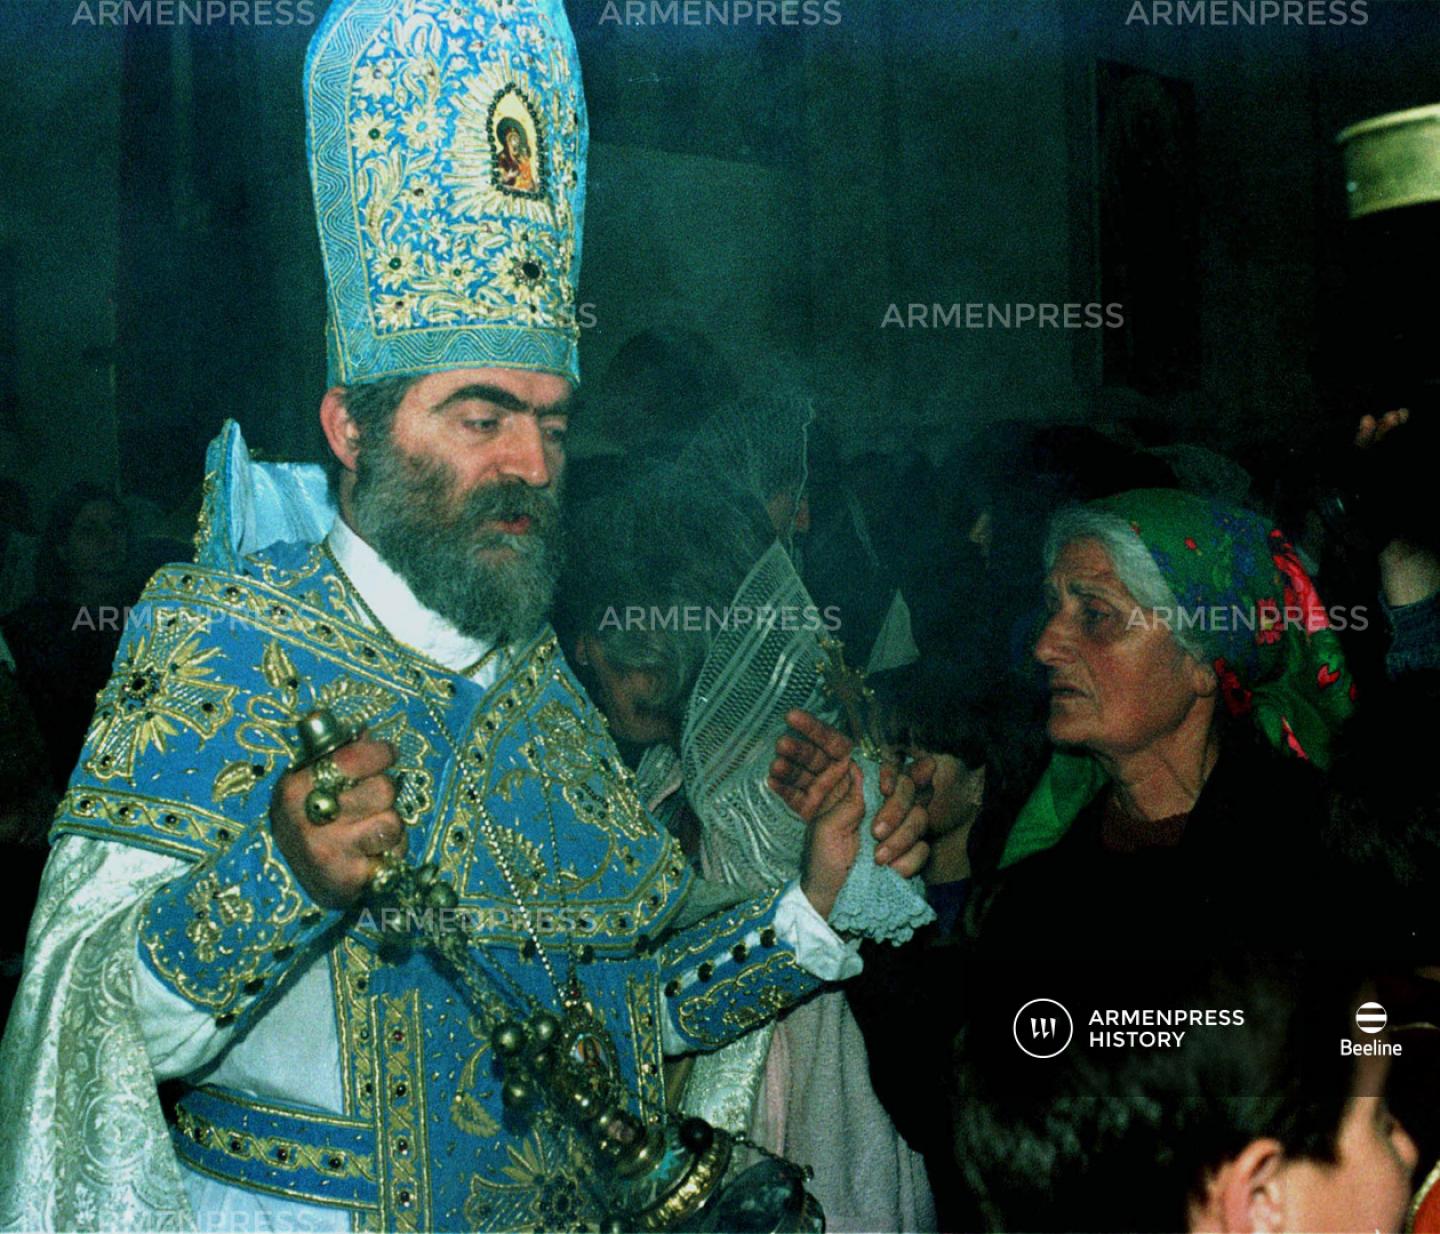 Պարգև արքեպիսկոպոս Մարտիրոսյան